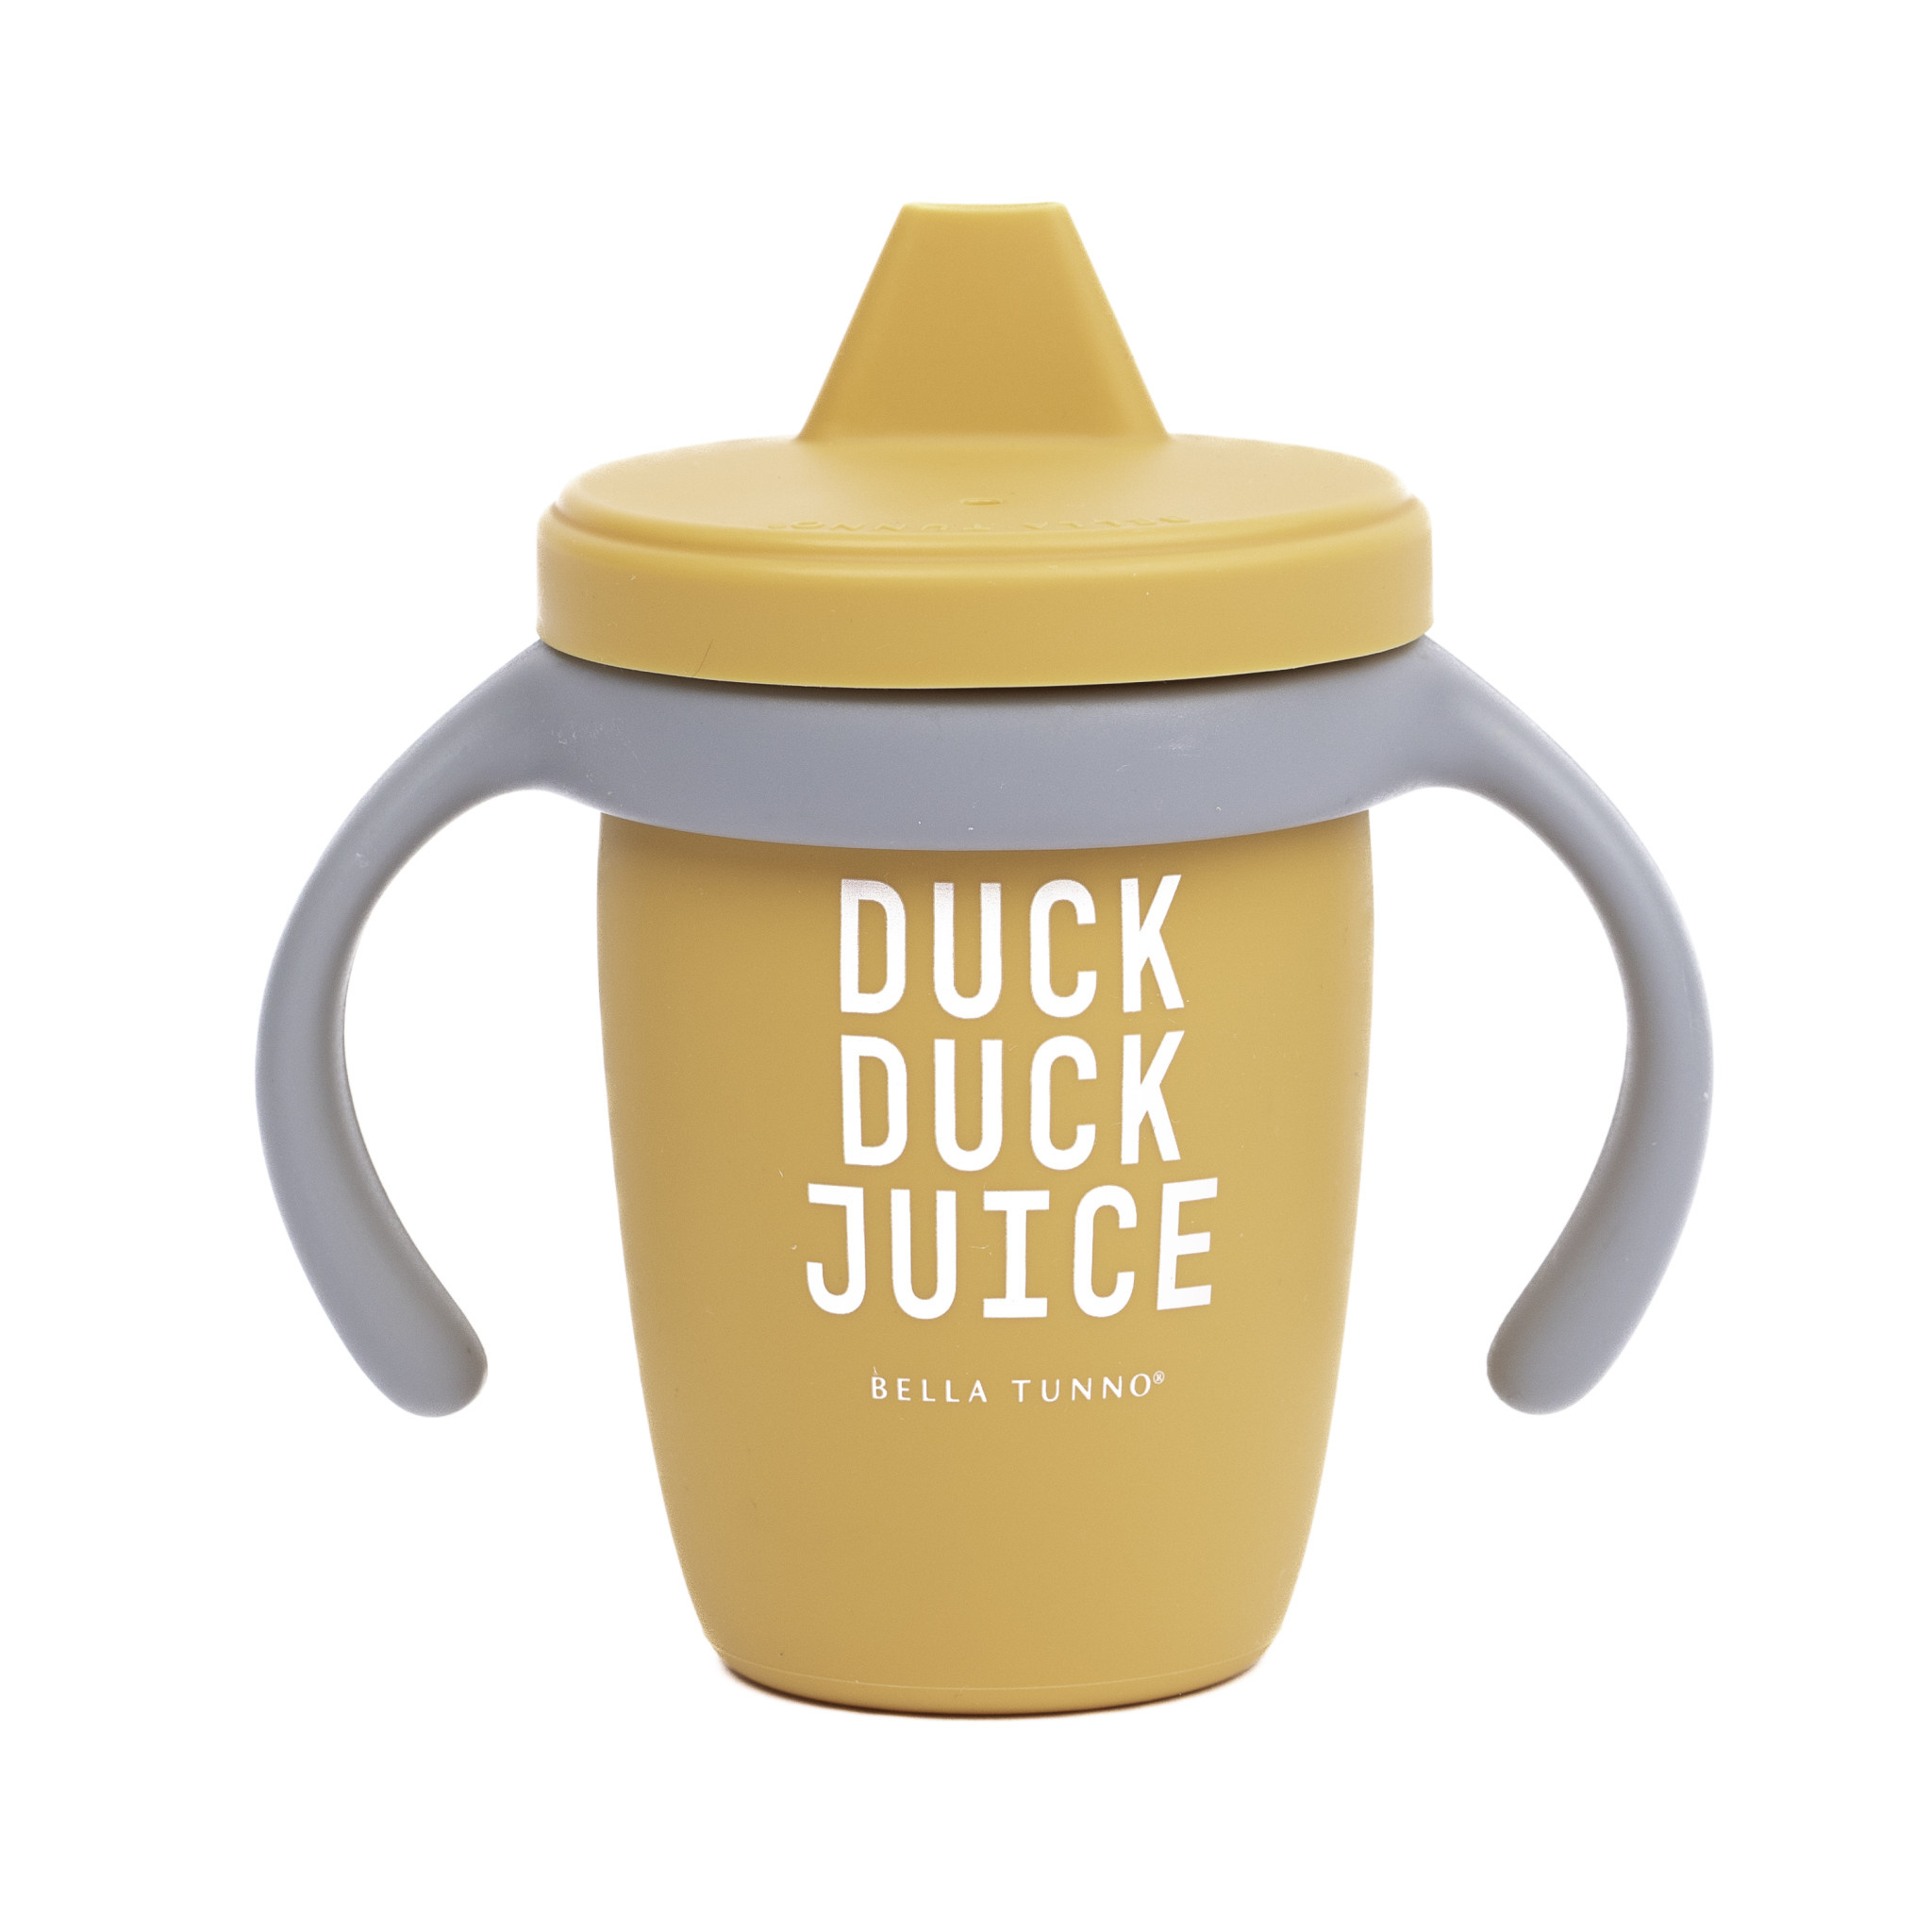 Bella Tunno Sippy Cup - Duck Duck Juice